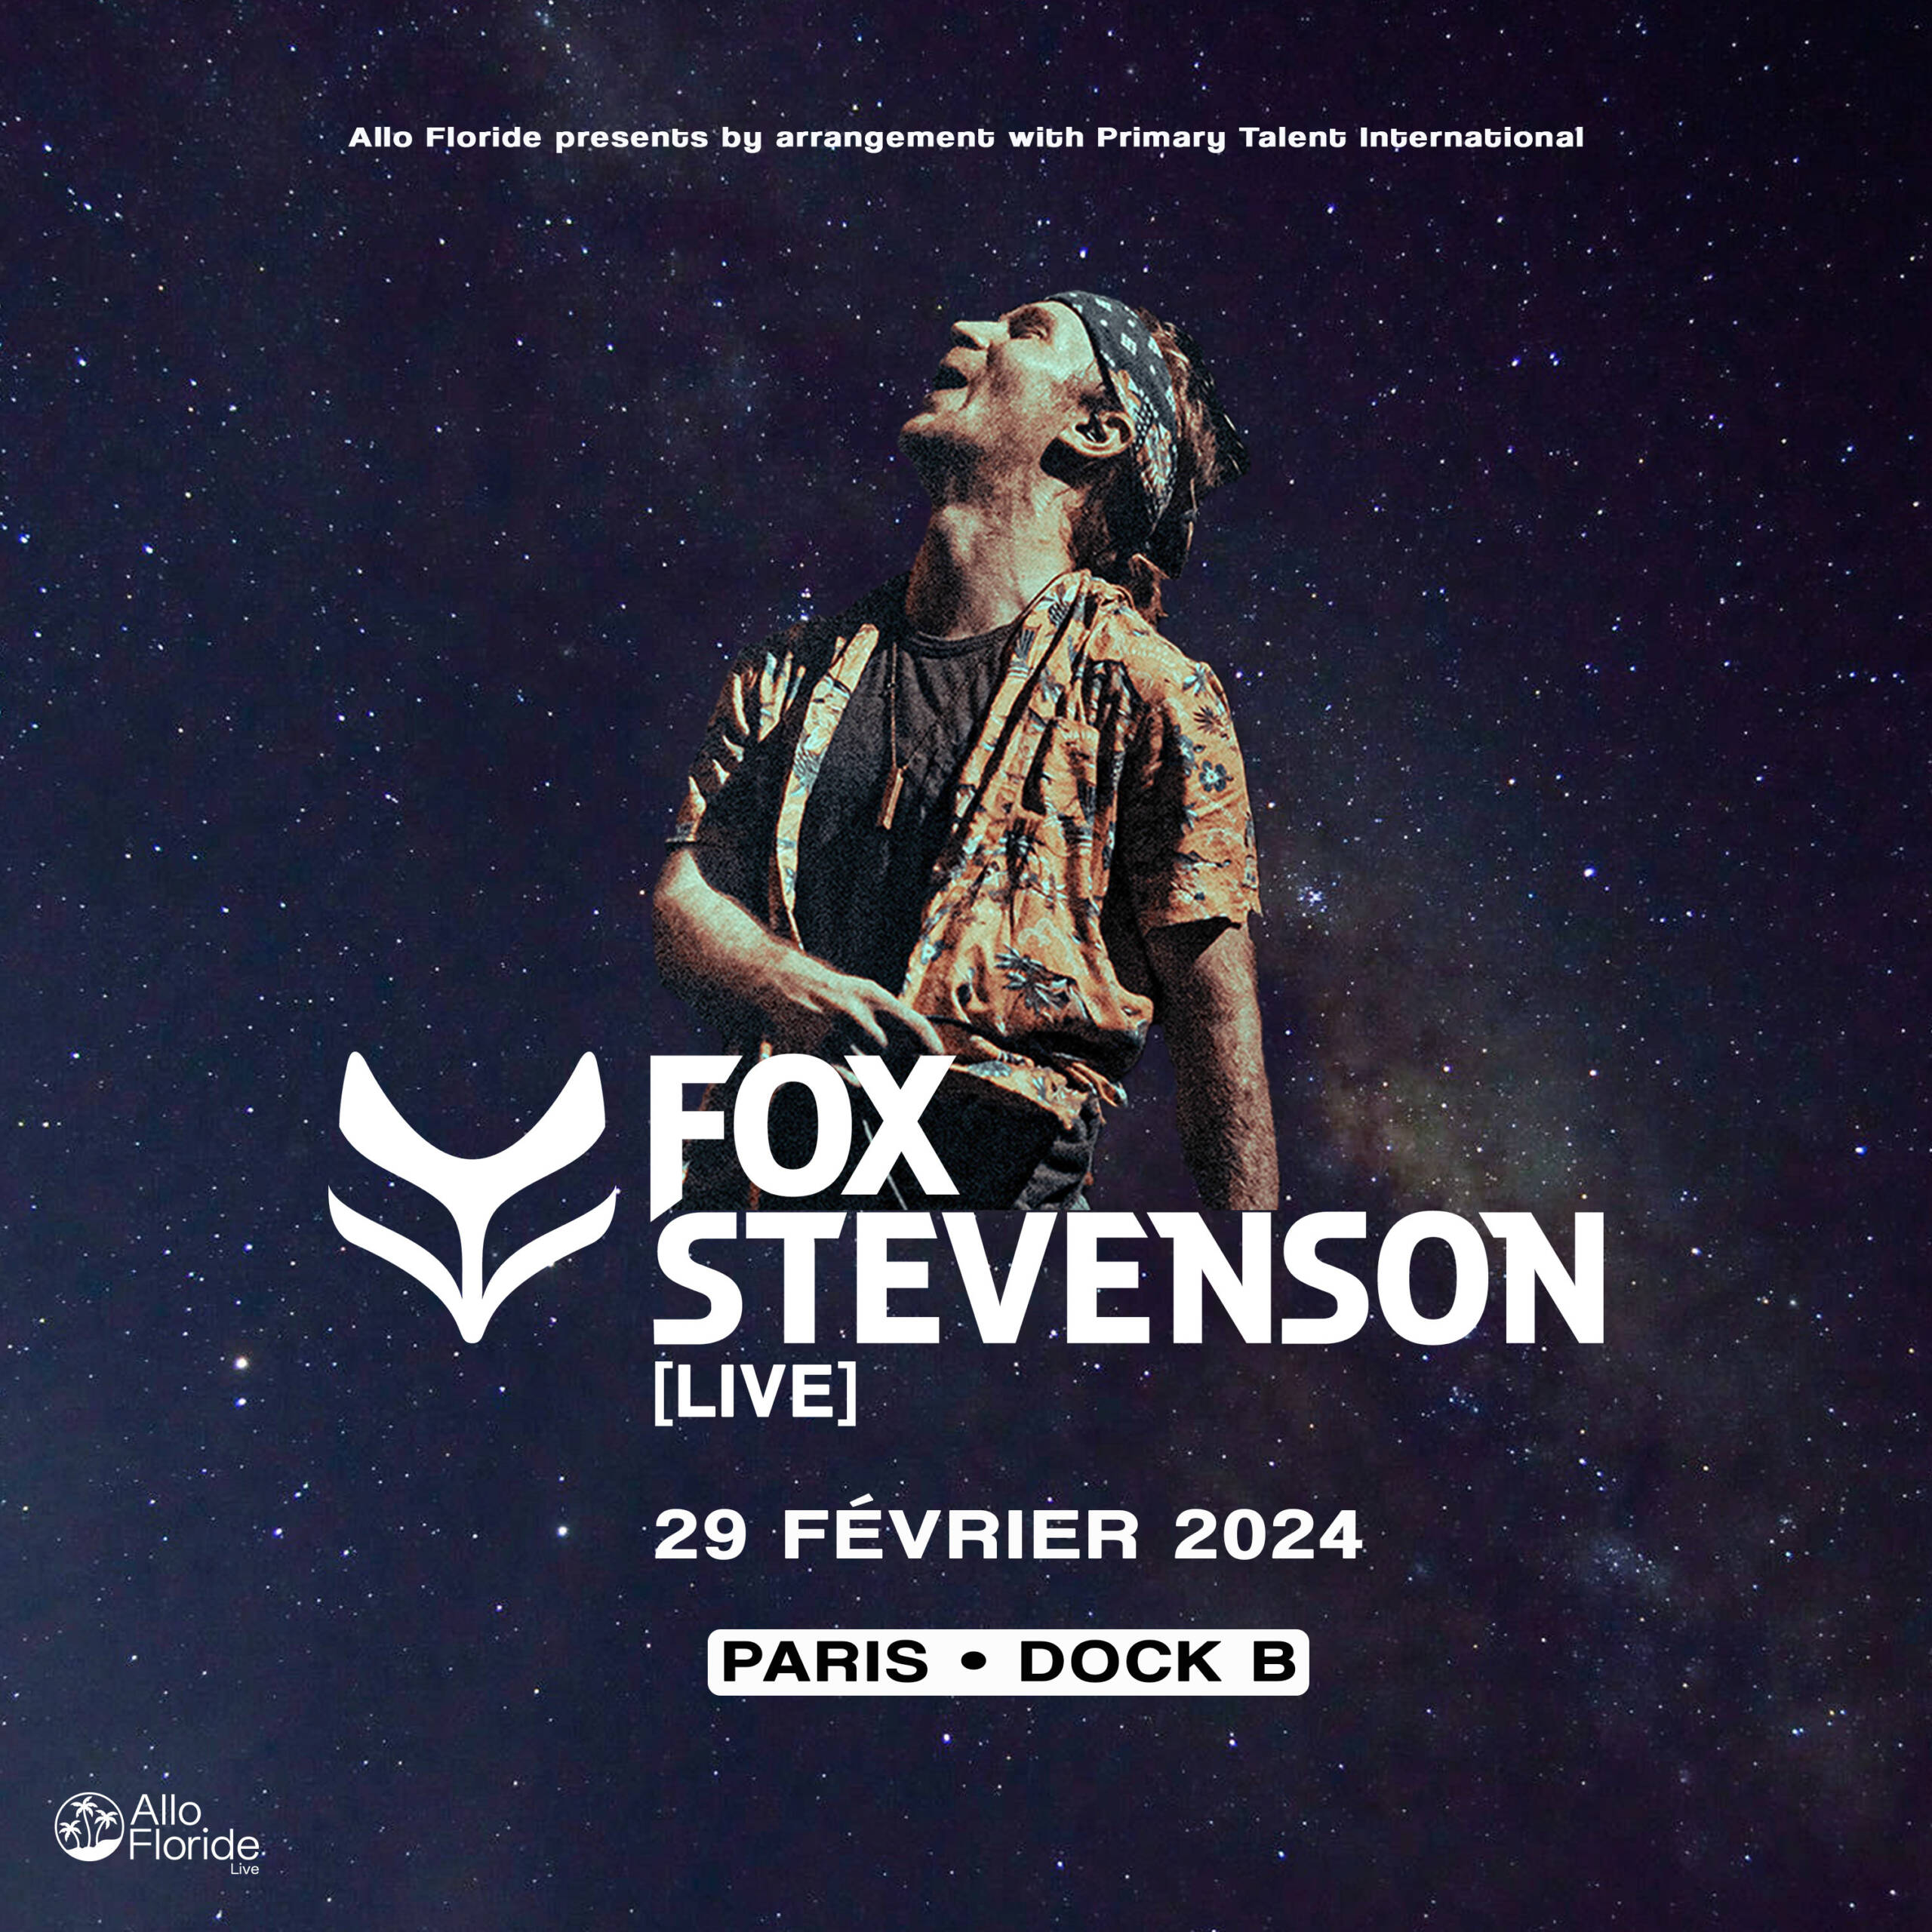 Fox Stevenson (live)